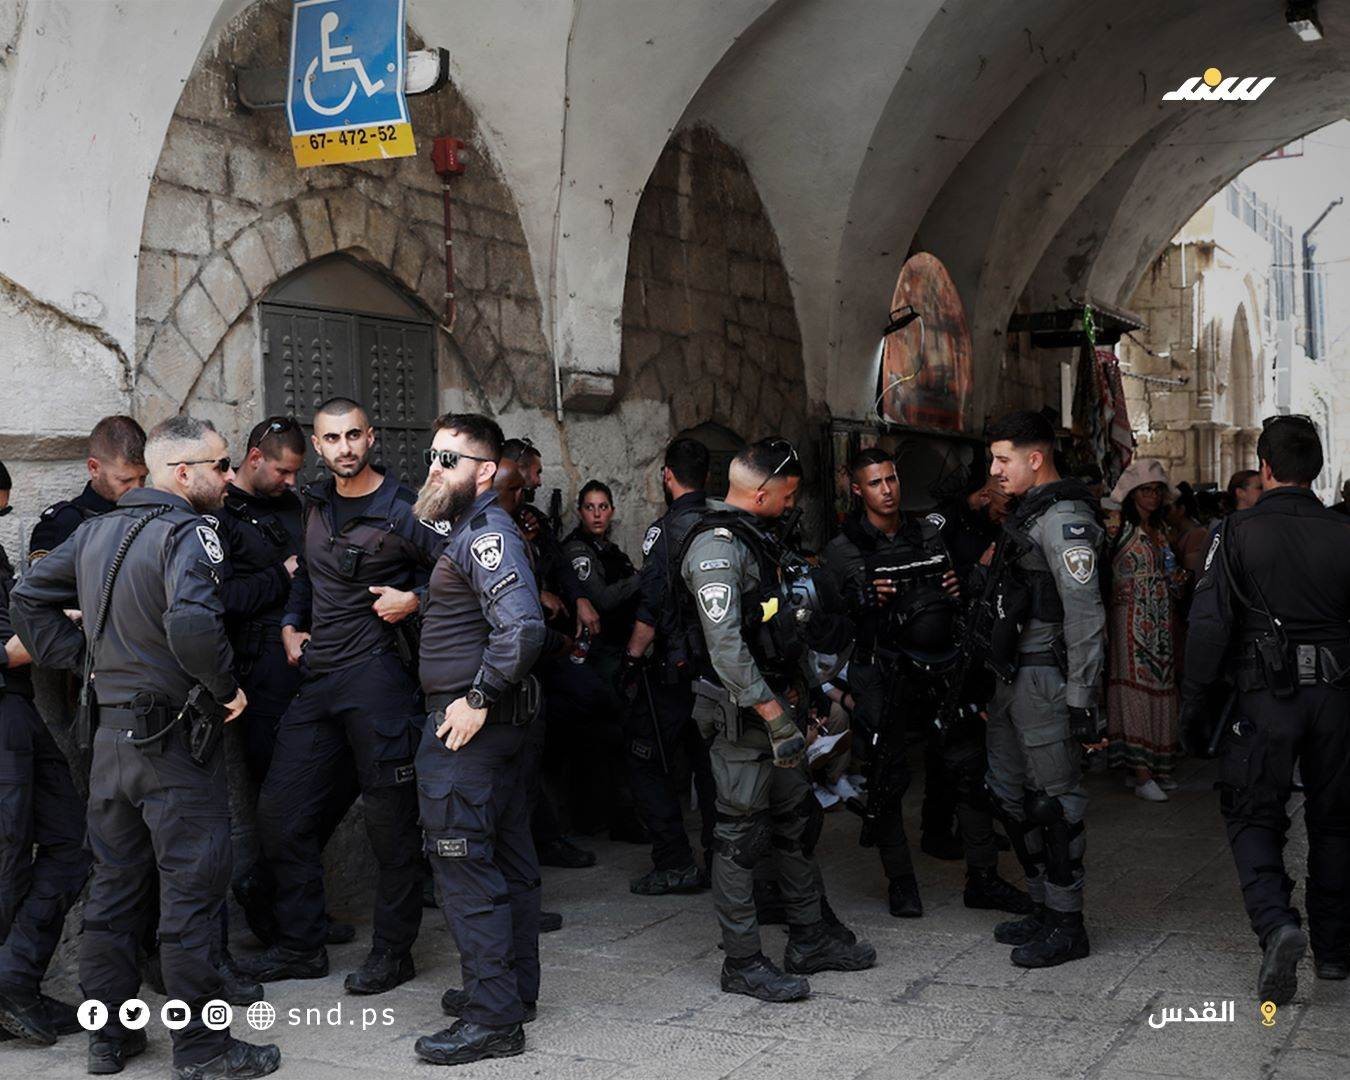 وقفة تضامنية مع عائلة صب لبن بالبلدة القديمة في القدس احتجاجا على تهجيرها قسريا من منزلها.jpg